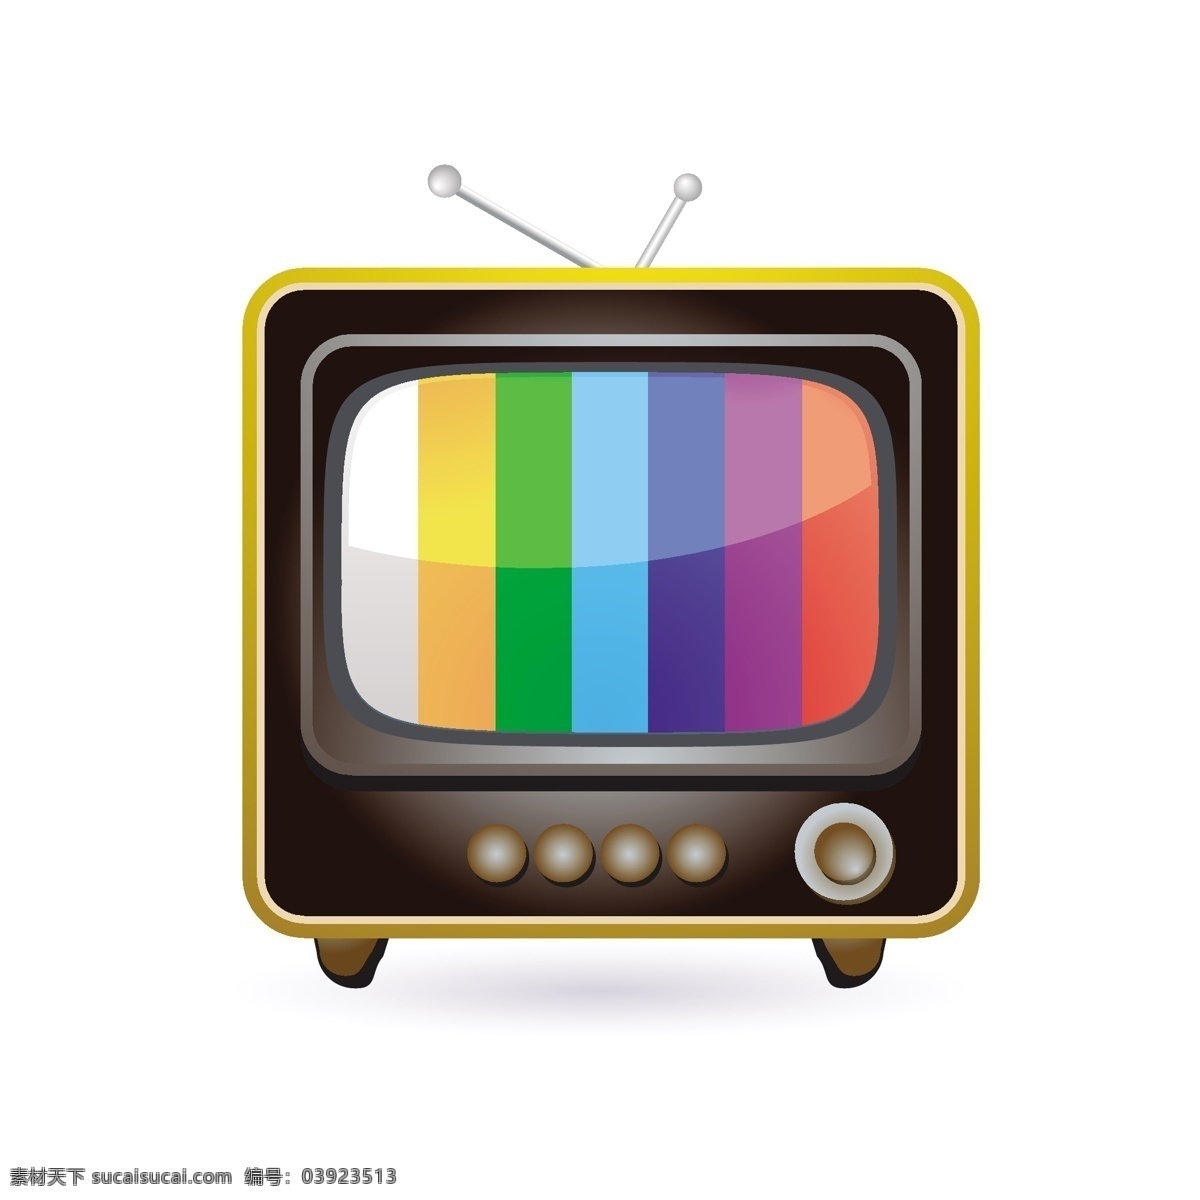 复古电视图标 复古 图标 电视 媒体 旧 屏幕 风格 集 休闲 广播 白色